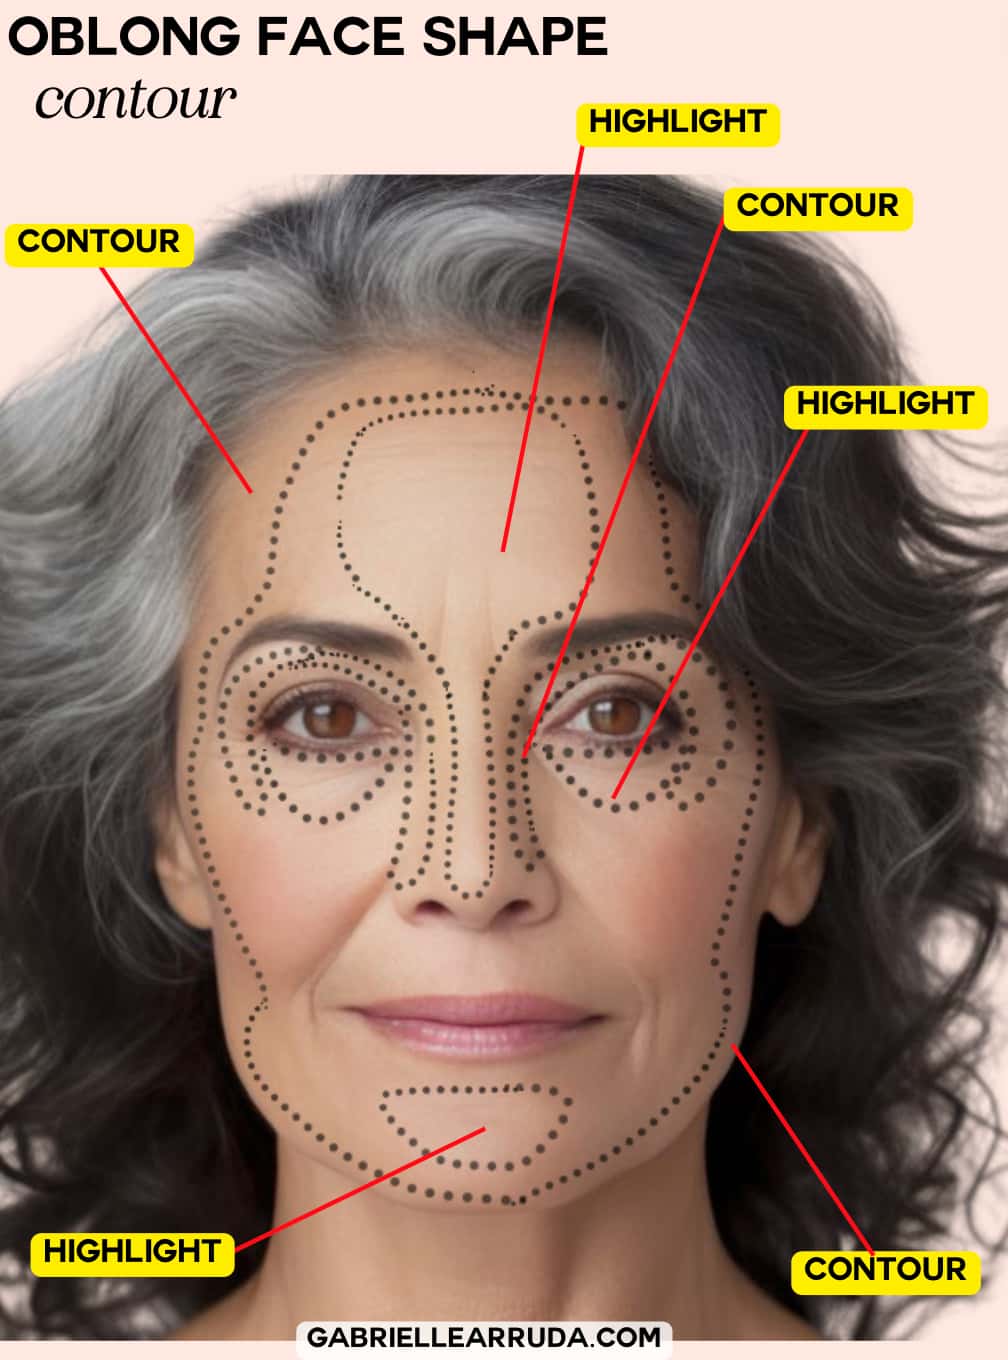 oblong face shape makeup contour